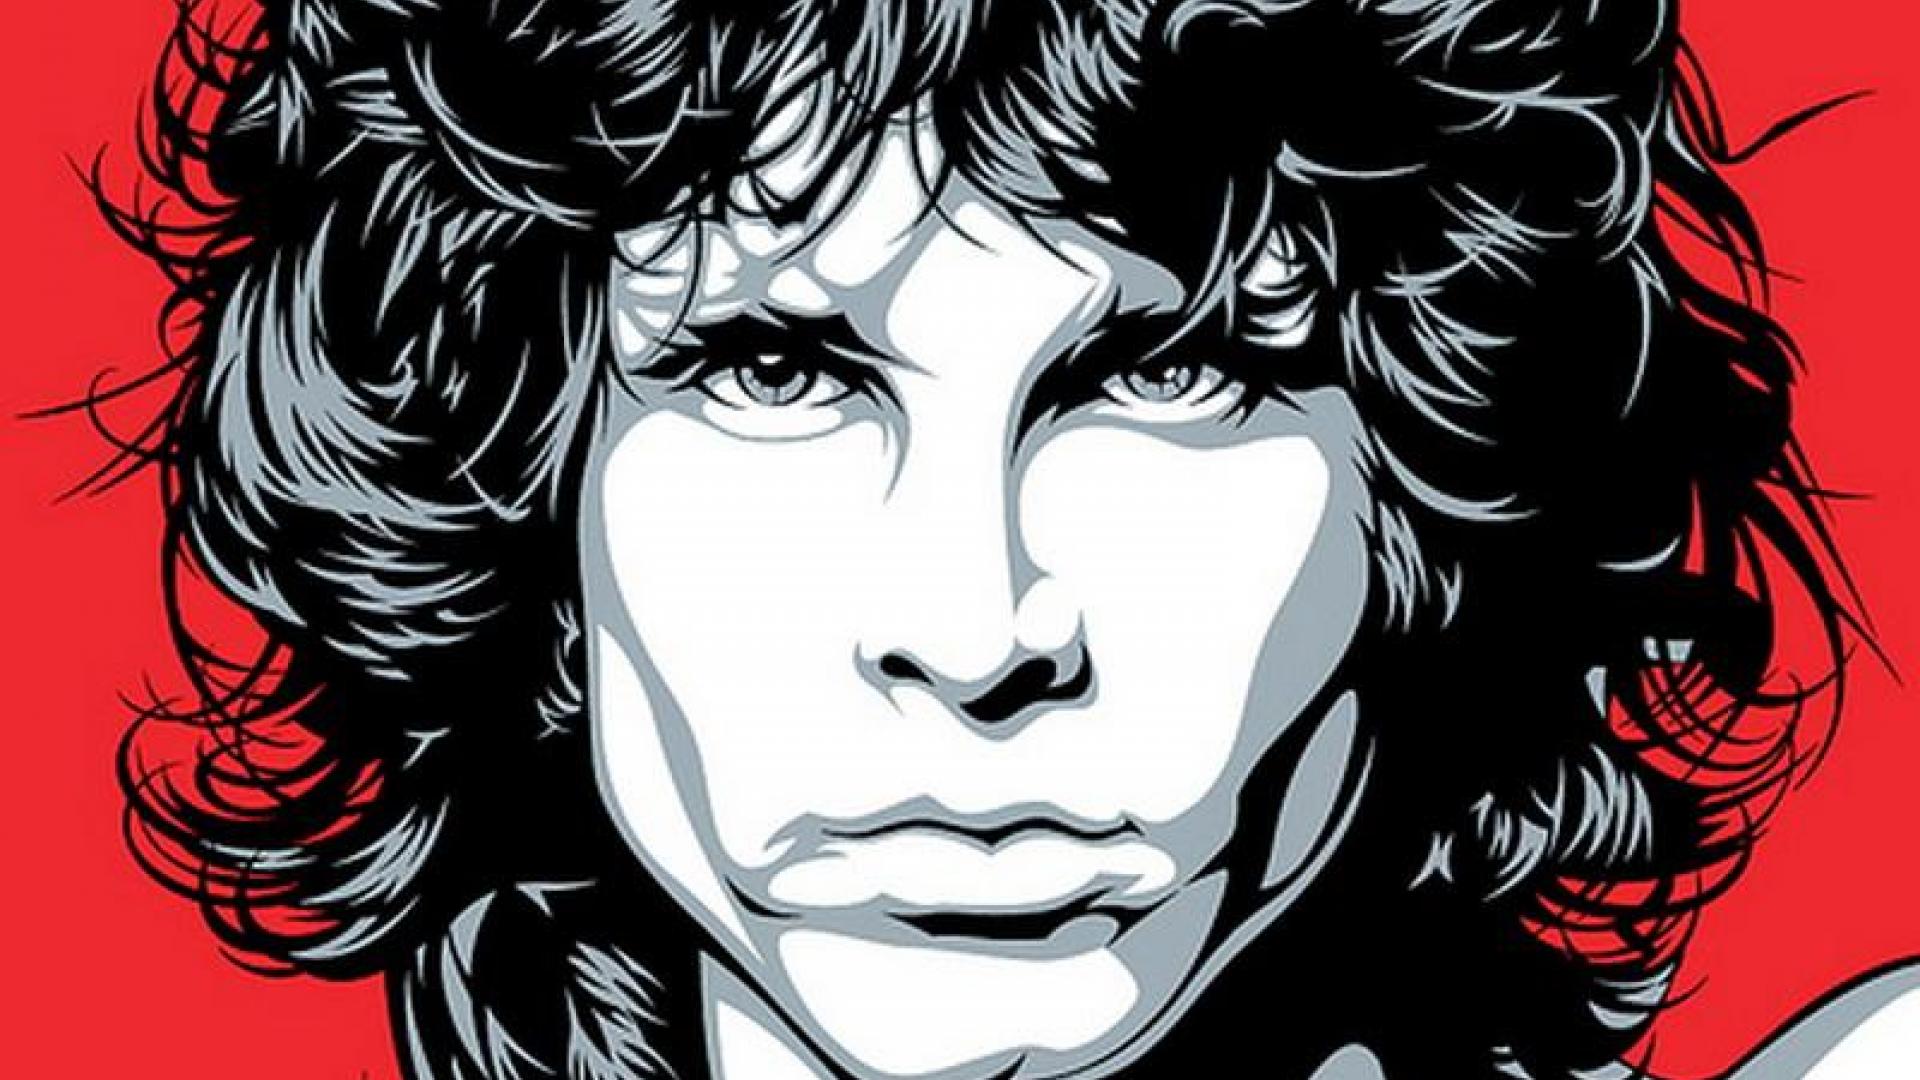 Jim Morrison Wallpaper Full HD Vpqv1po 4usky